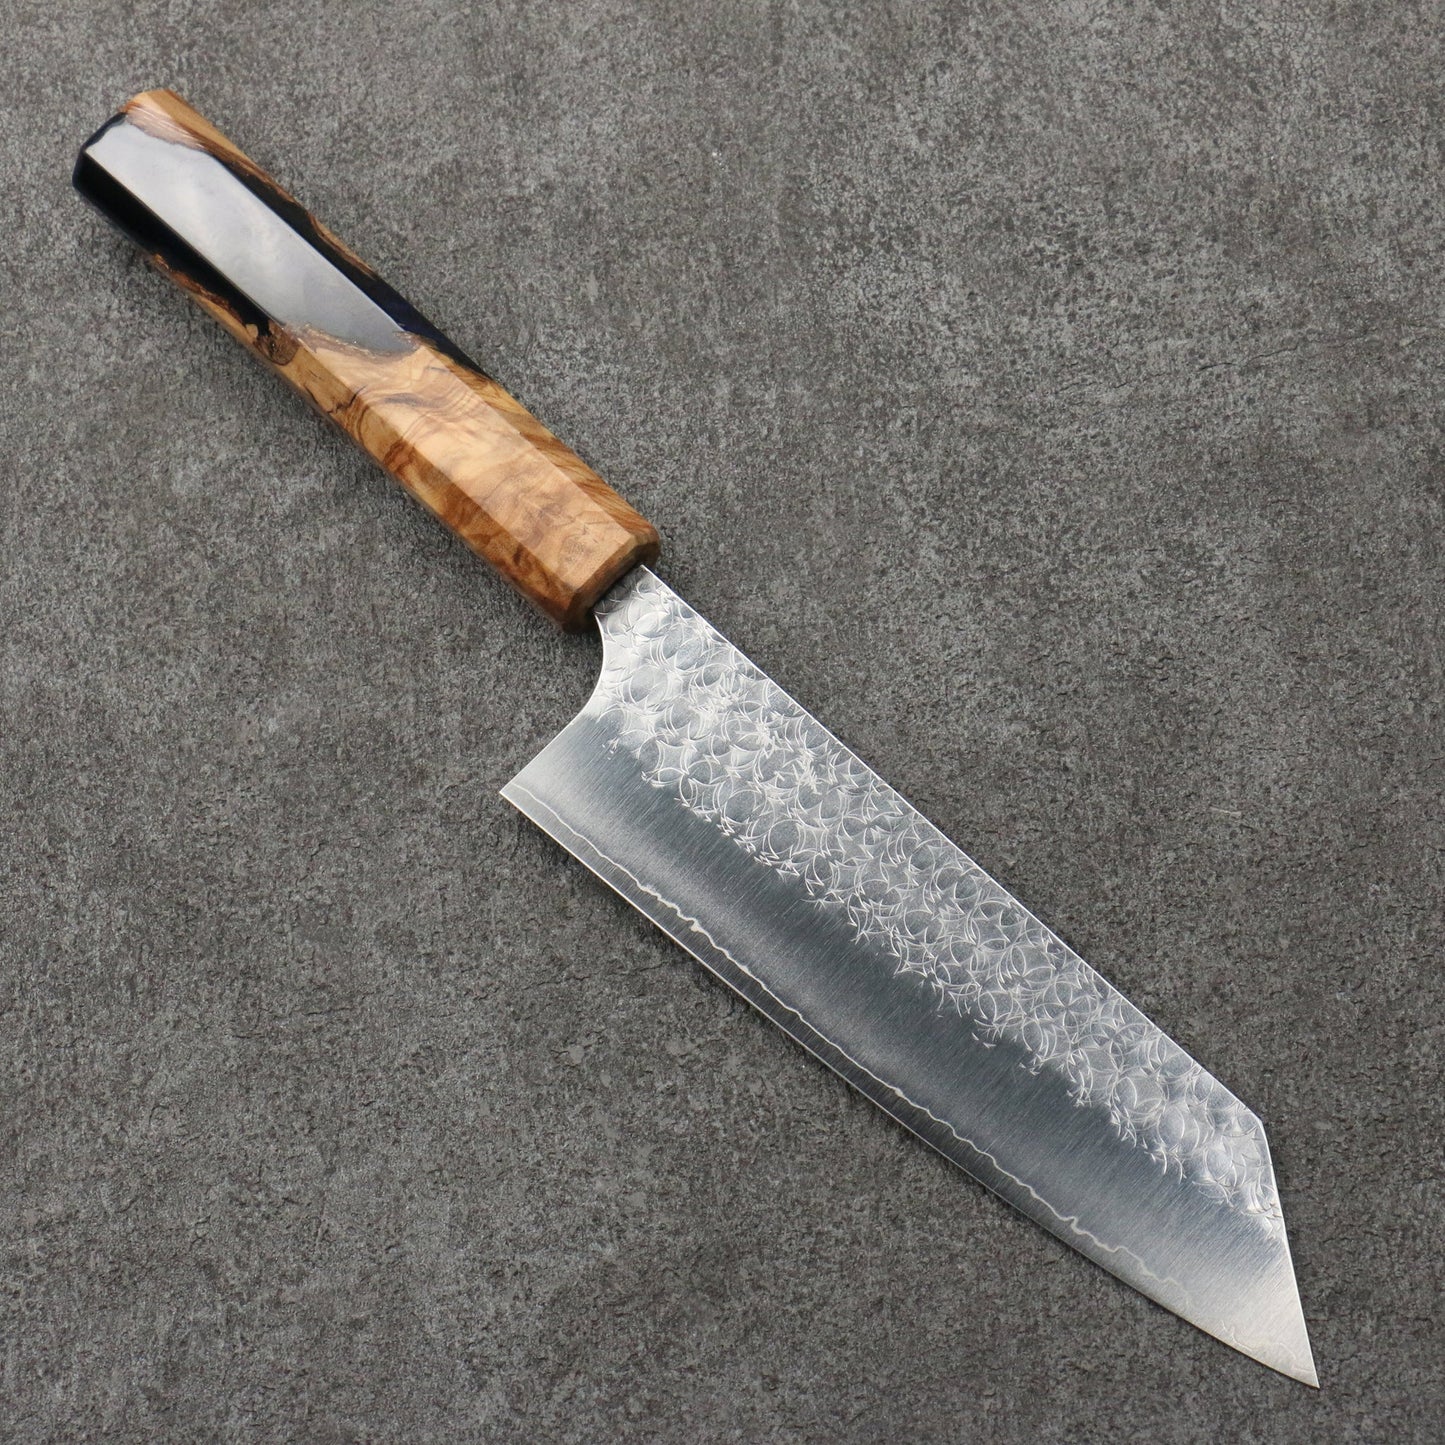 Free ship - Thương hiệu Yoshimi Kato Mizusurface SG2 Hammer Dao Bunka Knife 170mm chuôi dao hoa văn ô liu và nhựa